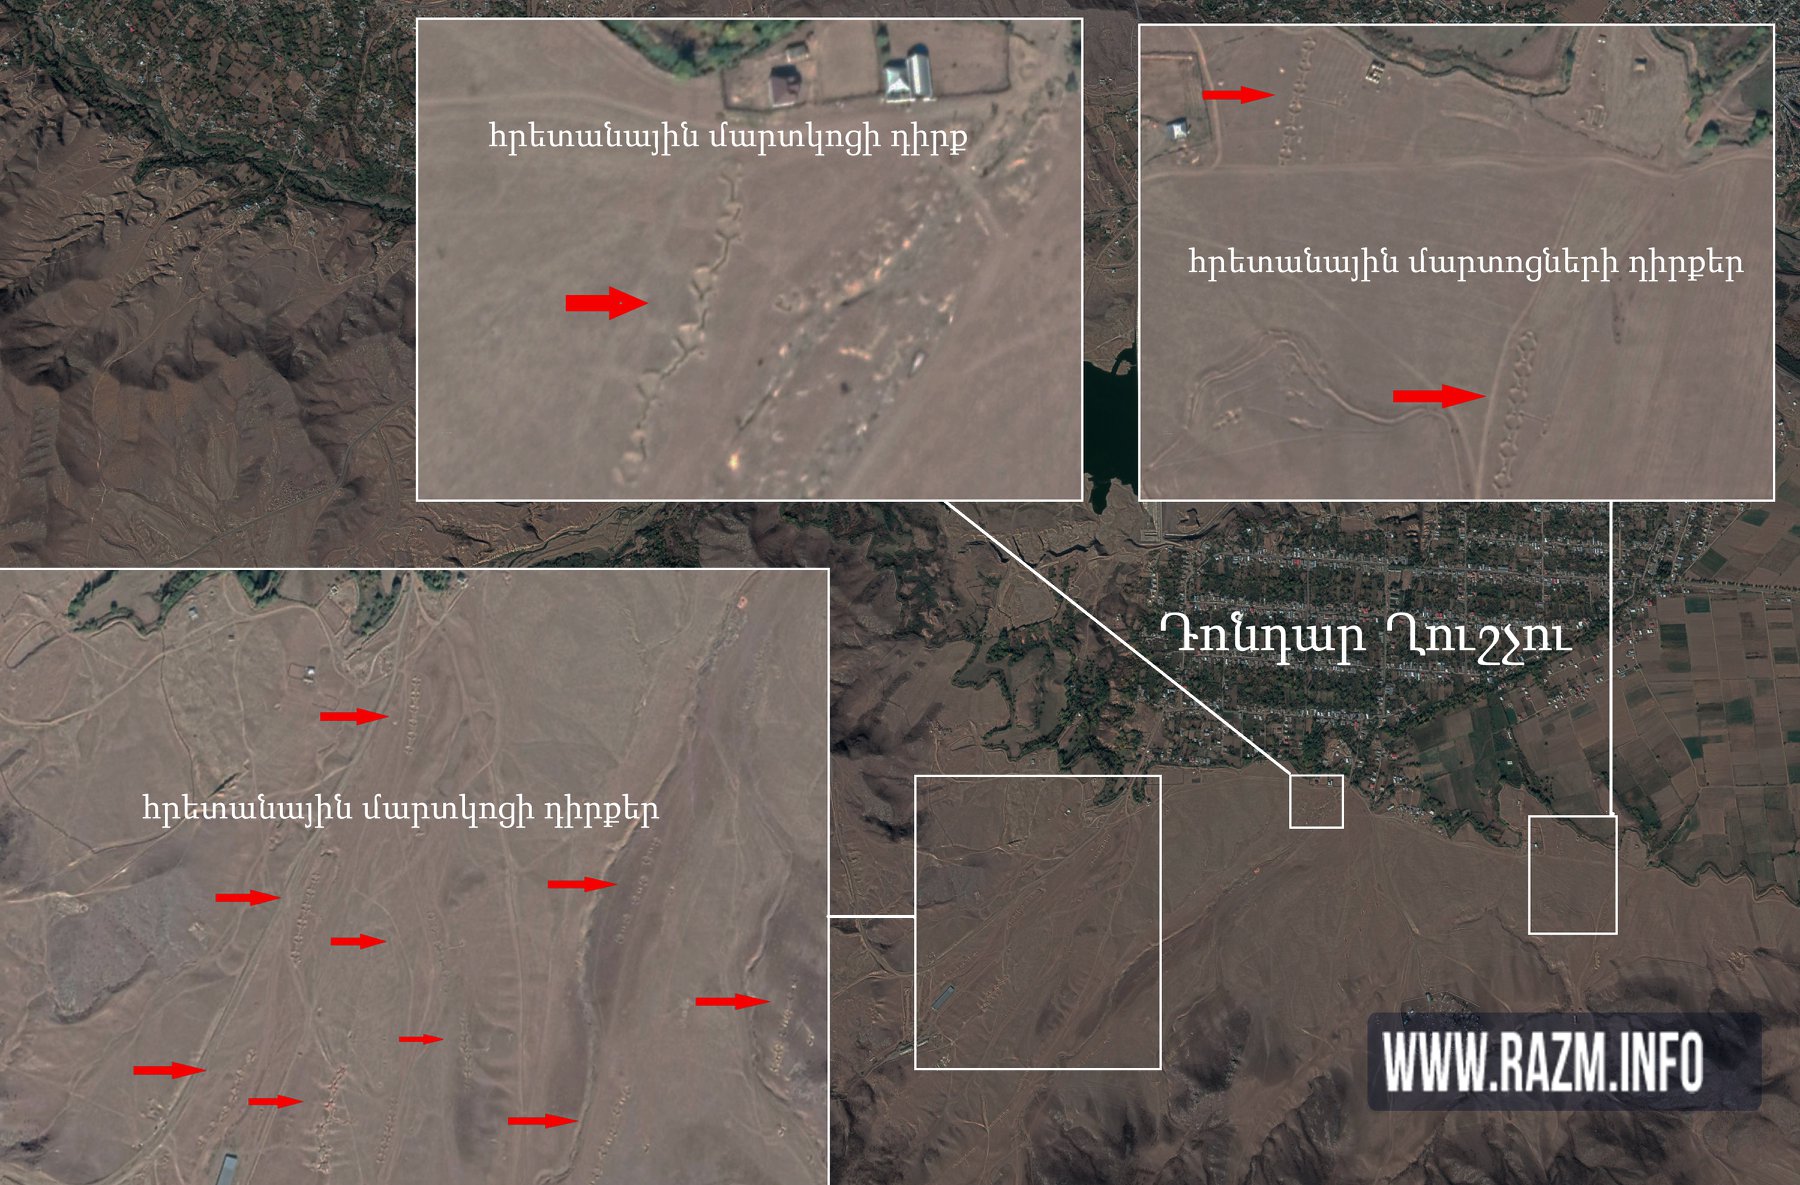 ВС Азербайджана окружило собственное население артиллерийскими батареями, сделав их мишенью 